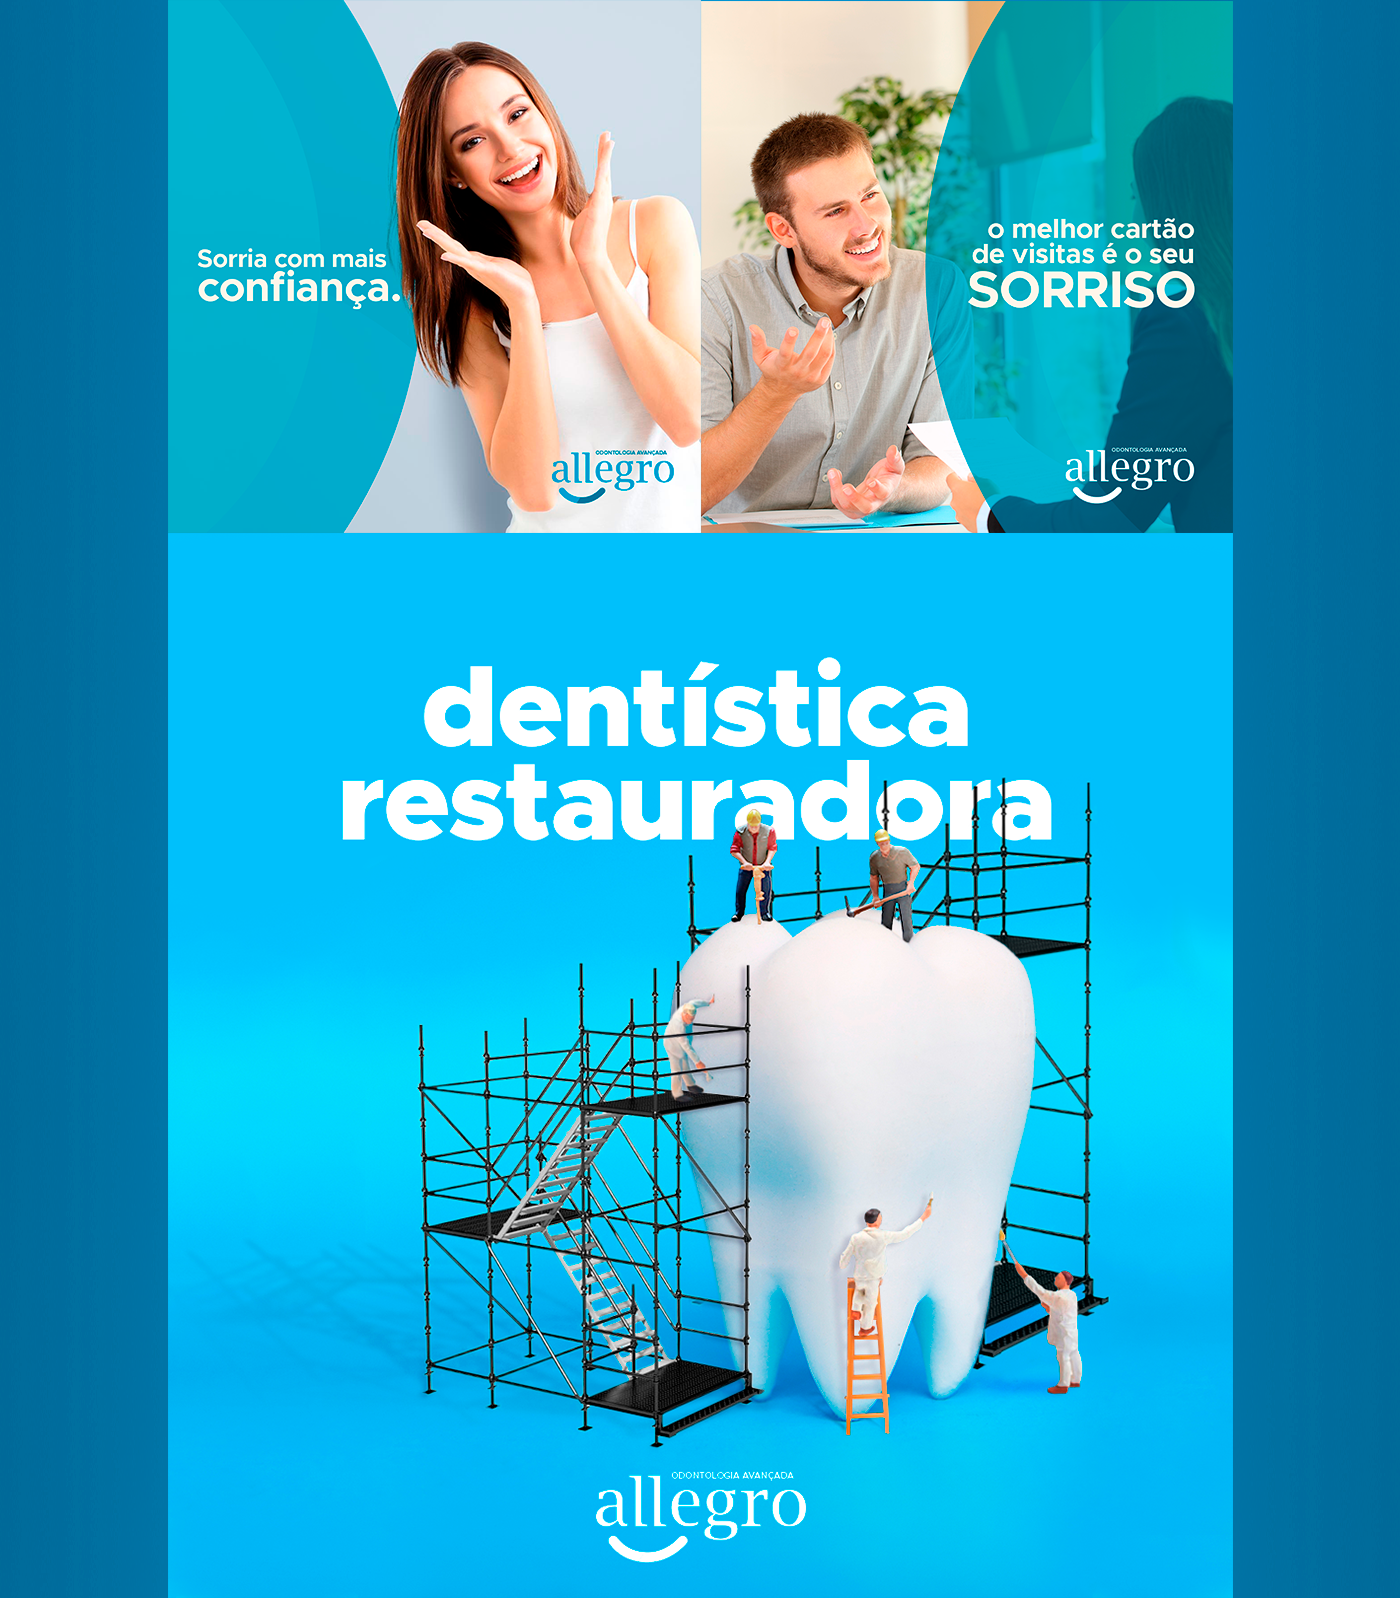 social media mídias sociais post Allegro Odontologia dentista Clínica Odontológica teeth dentist dental clinic